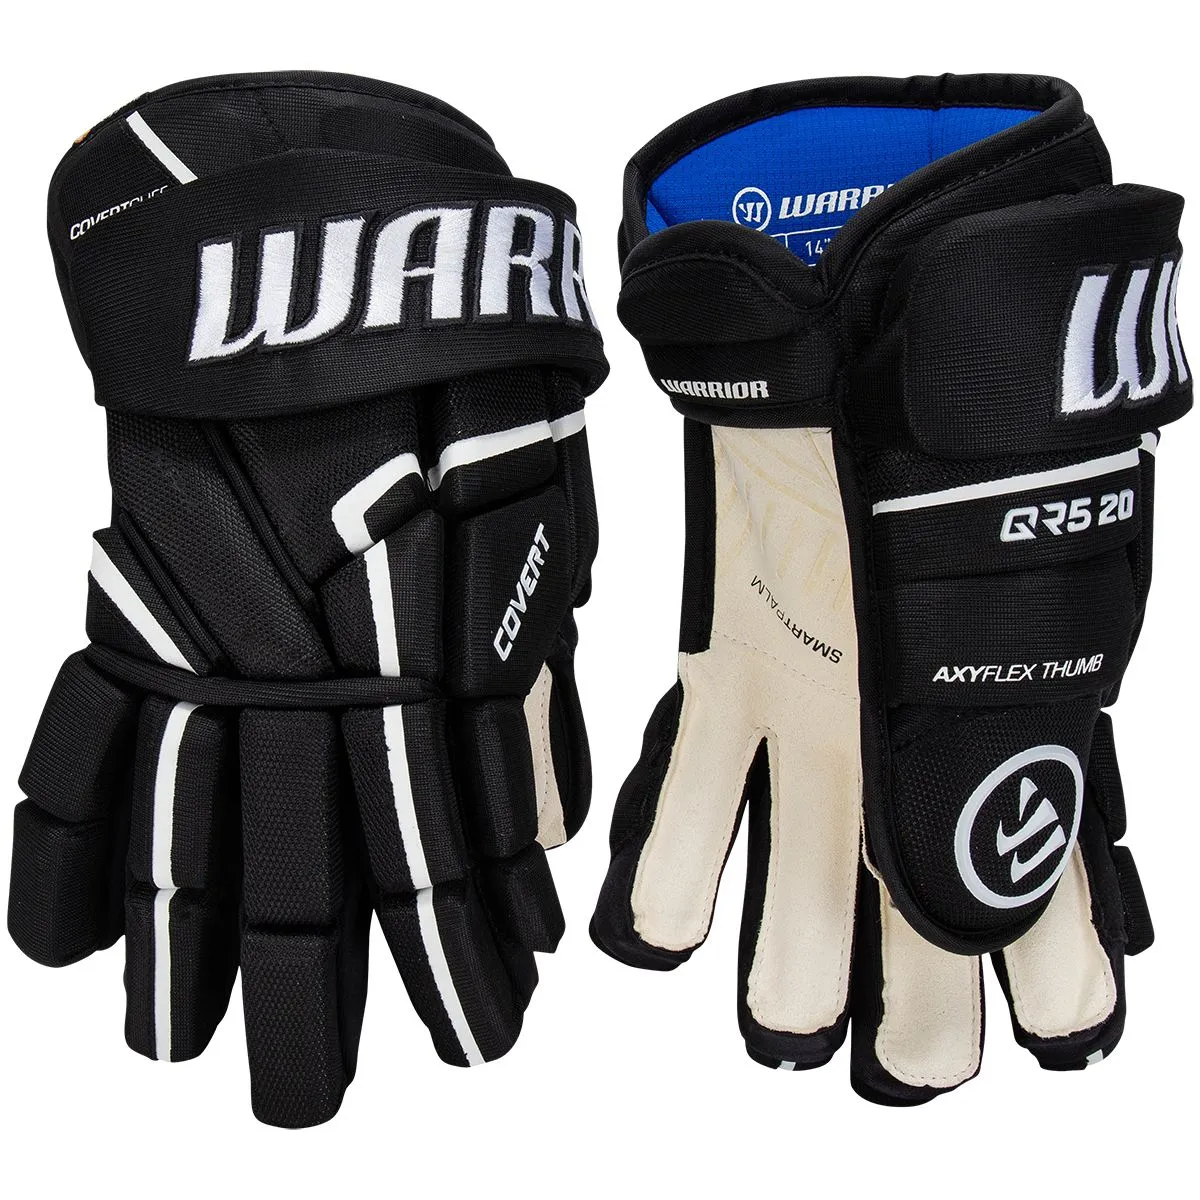 WARRIOR Covert QR5 20 Senior Ice Hockey Gloves